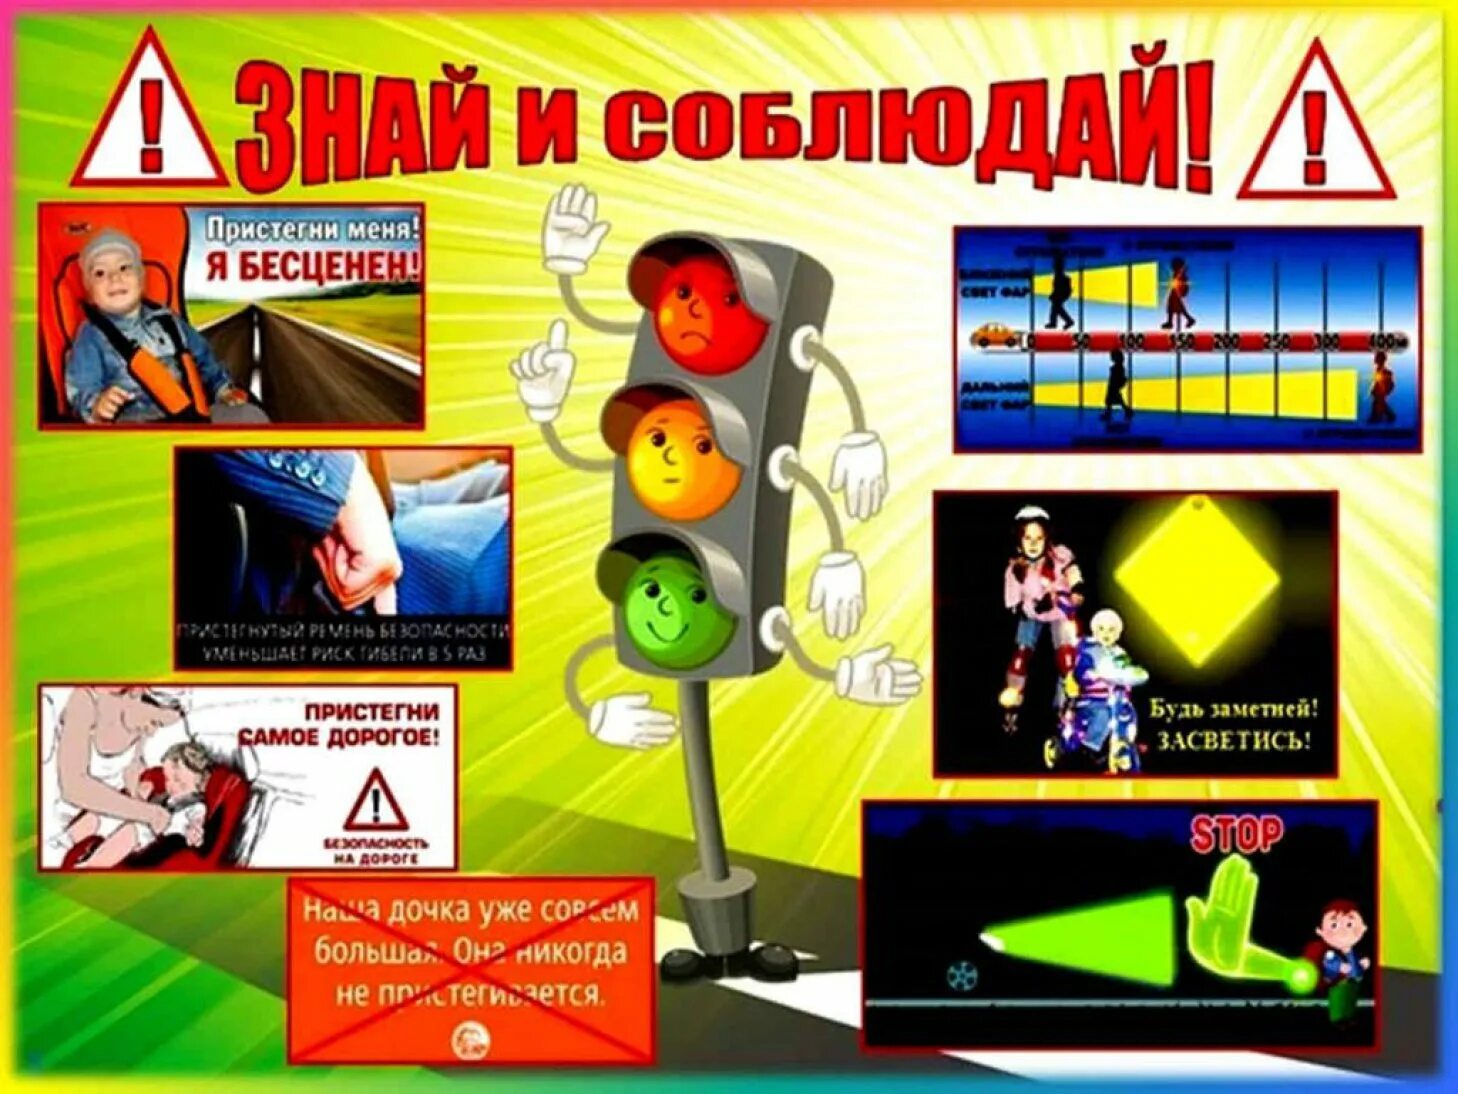 Минутки безопасности по пдд. Плакат по правилам дорожного движения. Плакат правил дорожного движения. Плакат о правилах дорожного движения. Правила дорожного движения для детей.